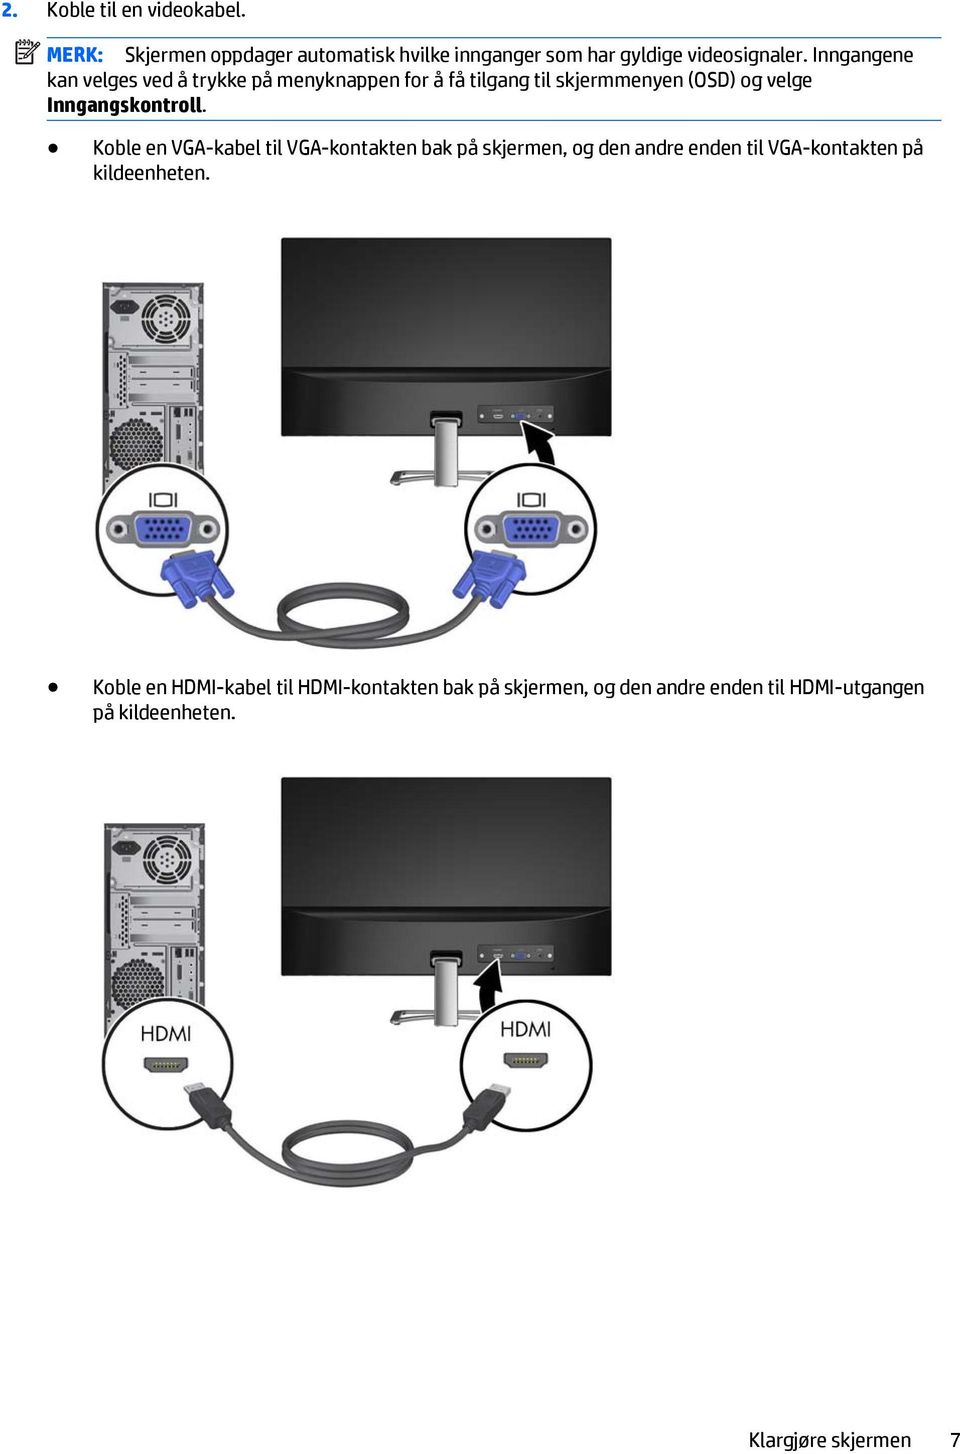 Koble en VGA-kabel til VGA-kontakten bak på skjermen, og den andre enden til VGA-kontakten på kildeenheten.